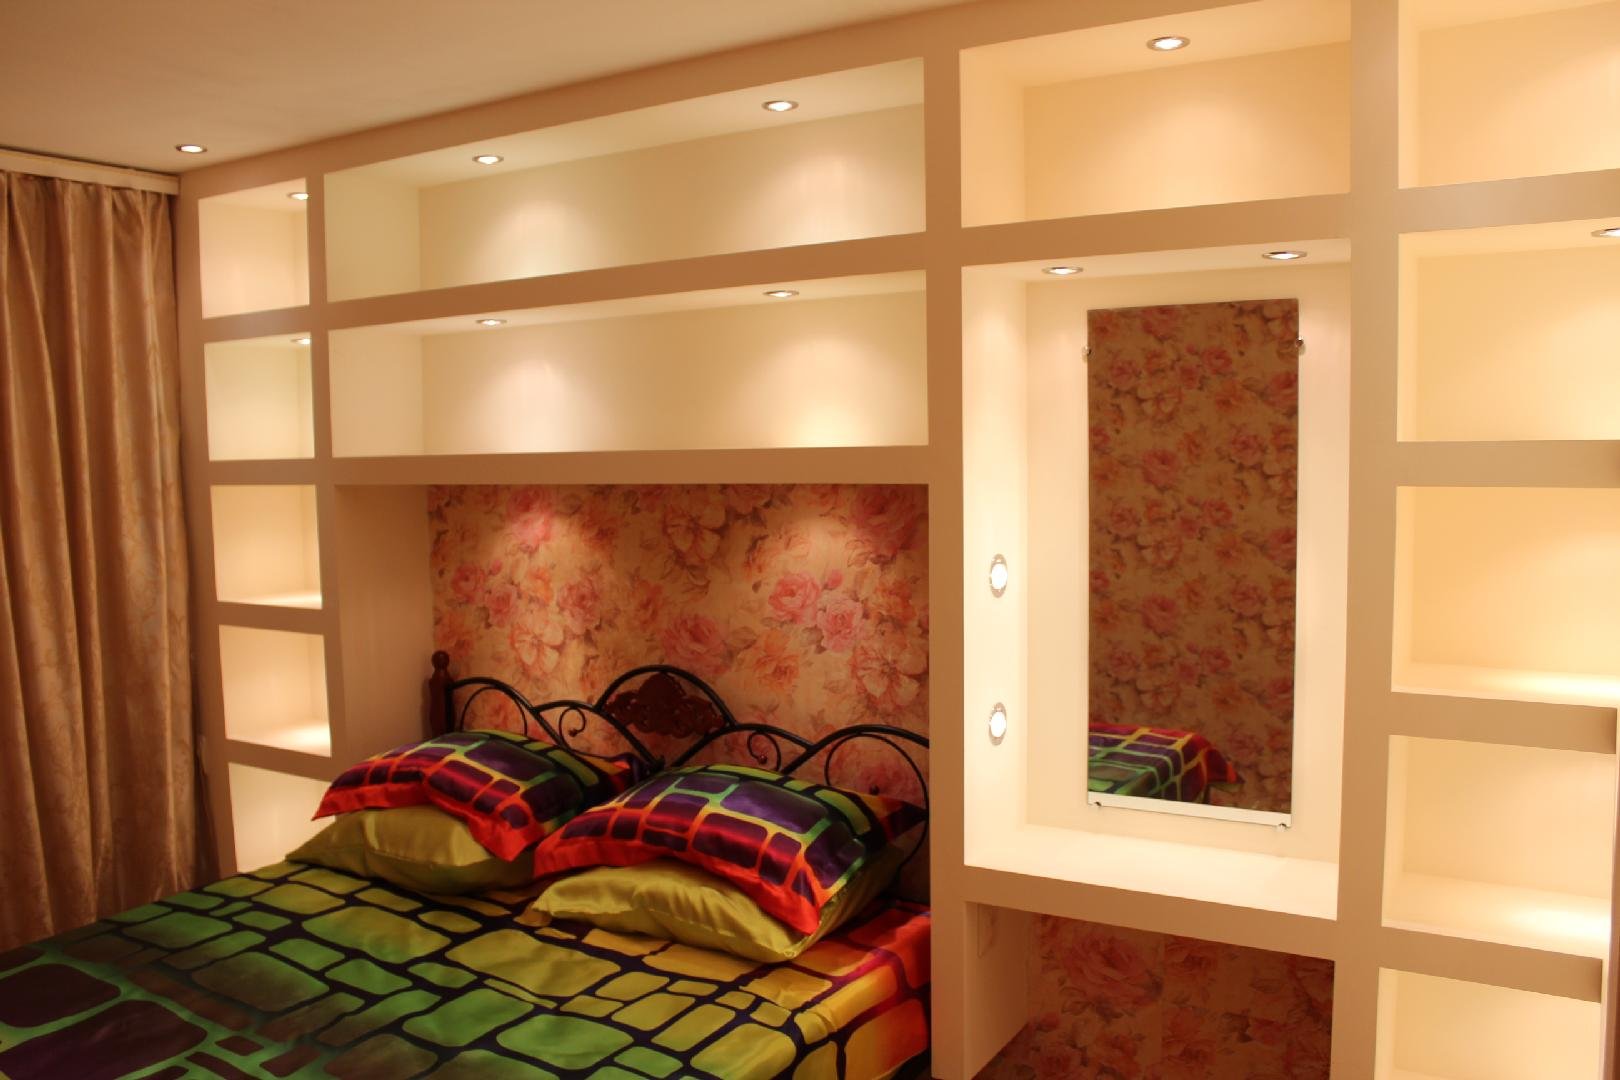 Ниша в спальне (46 фото): как оформить нишу из гипсокартона над кроватью, дизайн интерьера в восточном стиле